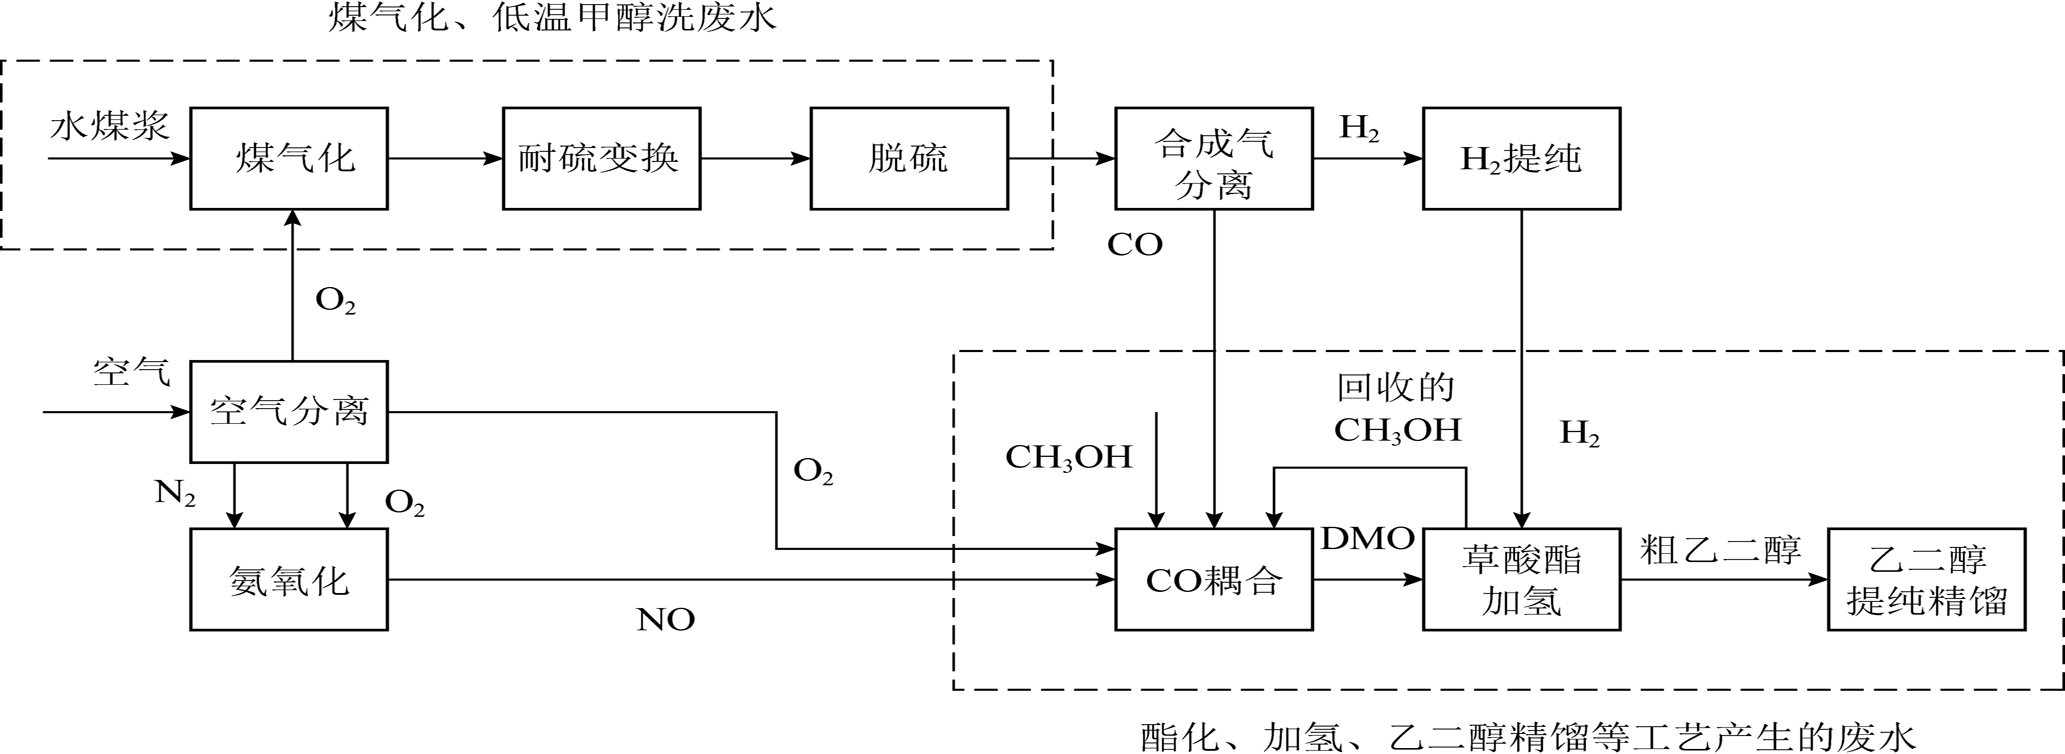 煤制乙二醇废水处理关键技术研究进展